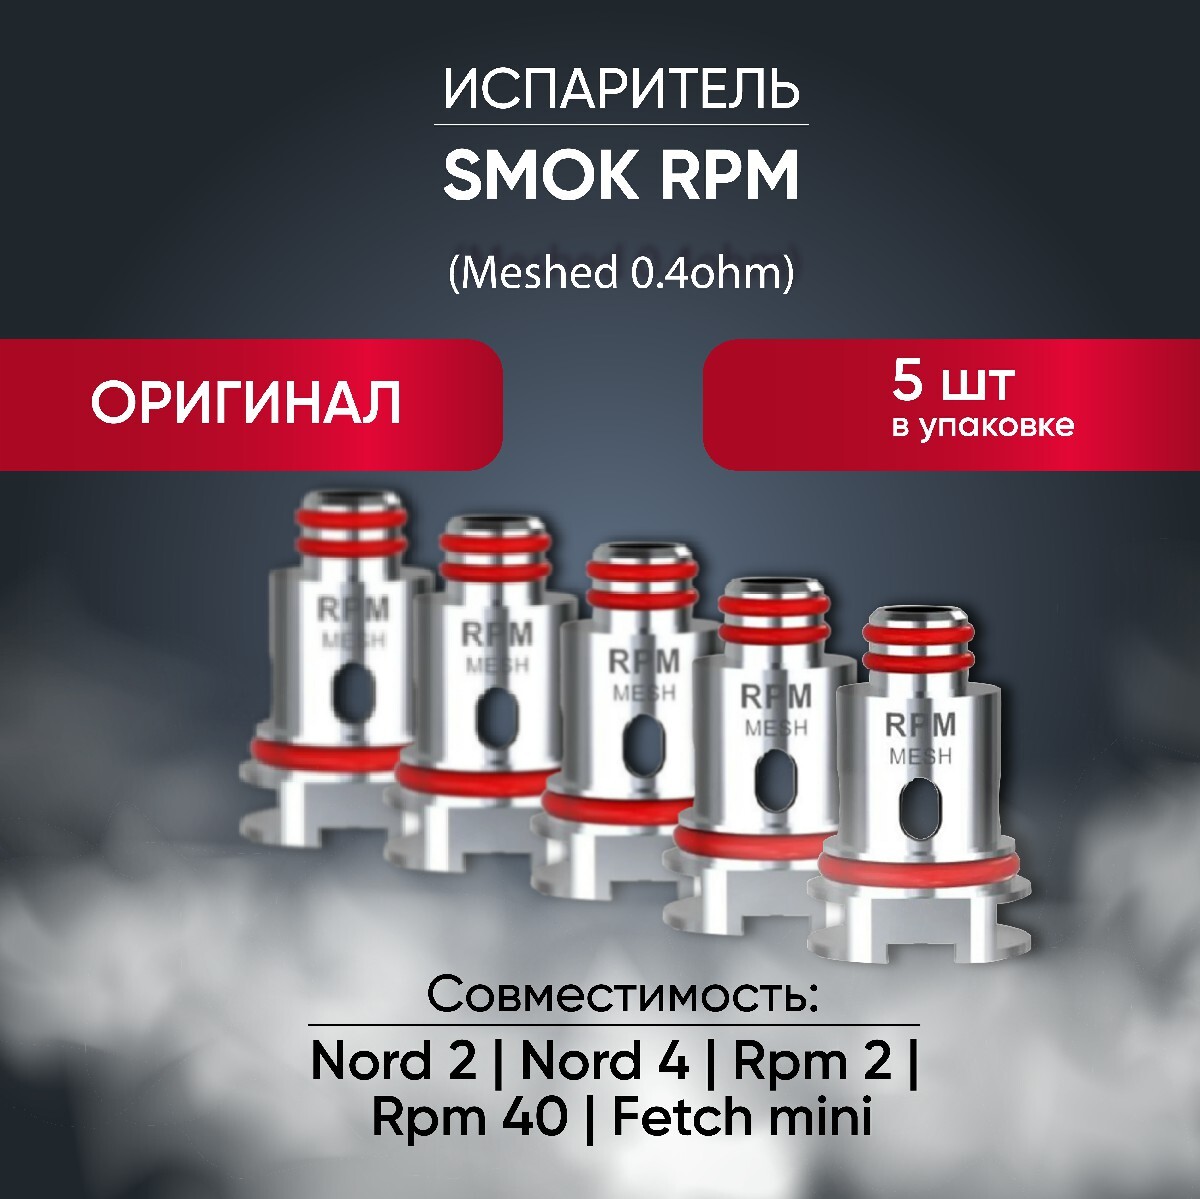 Смок рпм испаритель. Испаритель Smok Nord 2 RPM Mesh (0.4ohm). Испаритель Smok RPM Mesh 0.4. Smok Nord RPM 40. Испаритель Smok RPM 40 0.4.